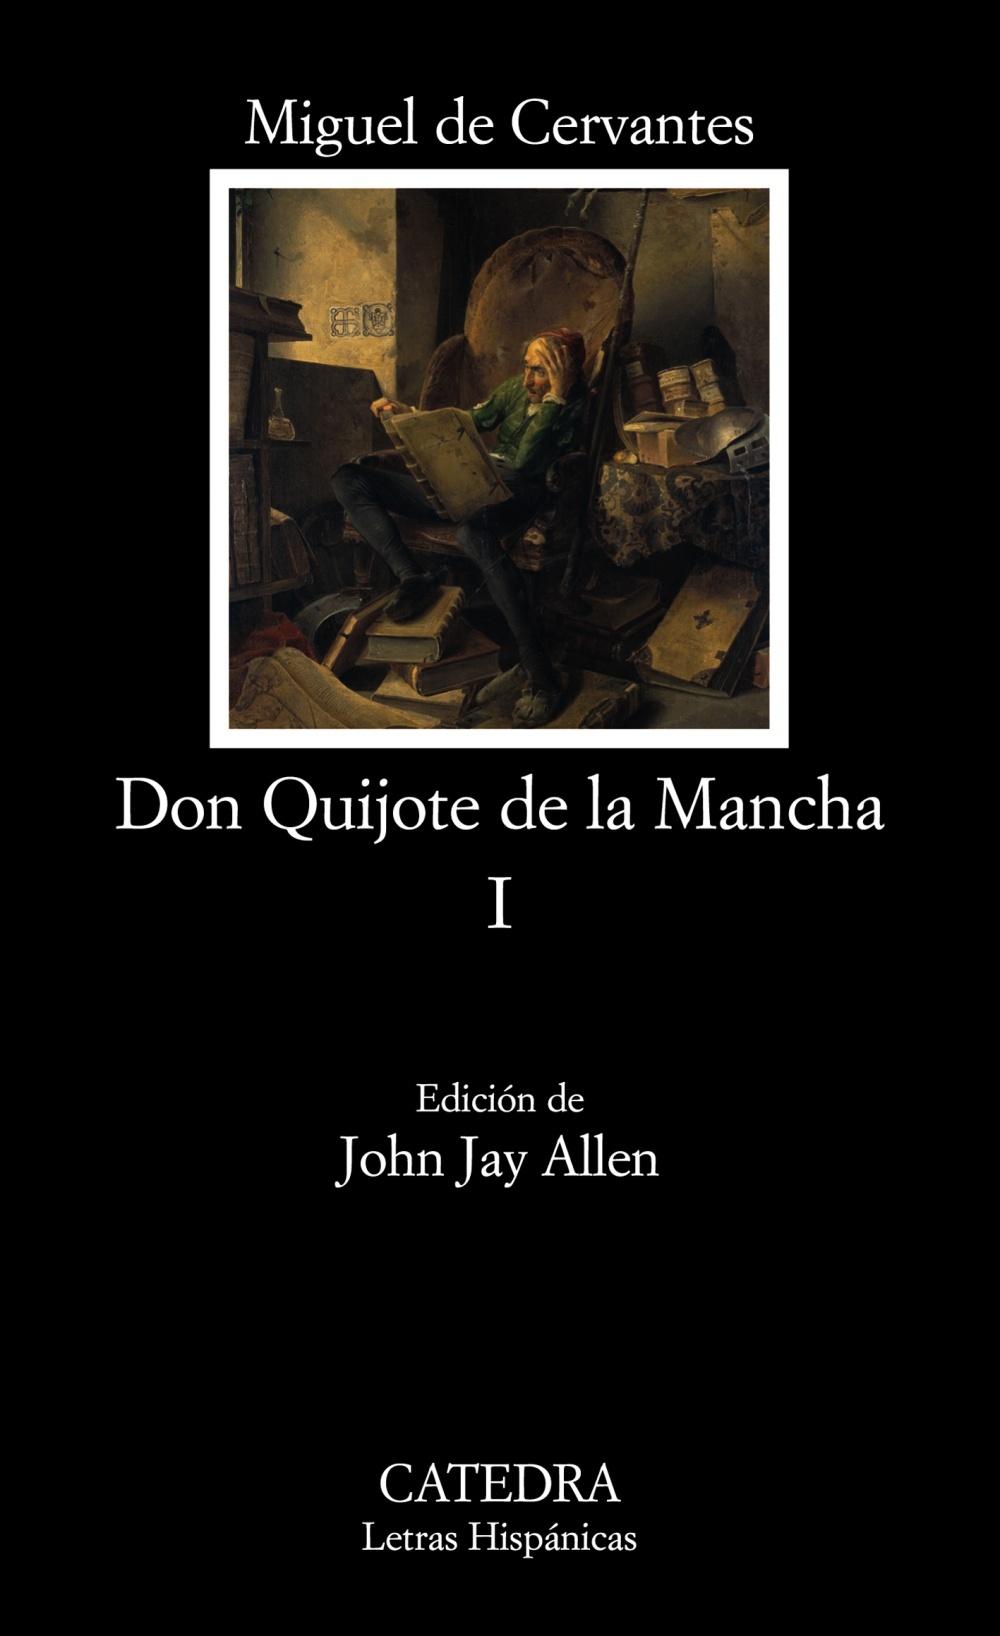 Foto Don Quijote de la Mancha, I